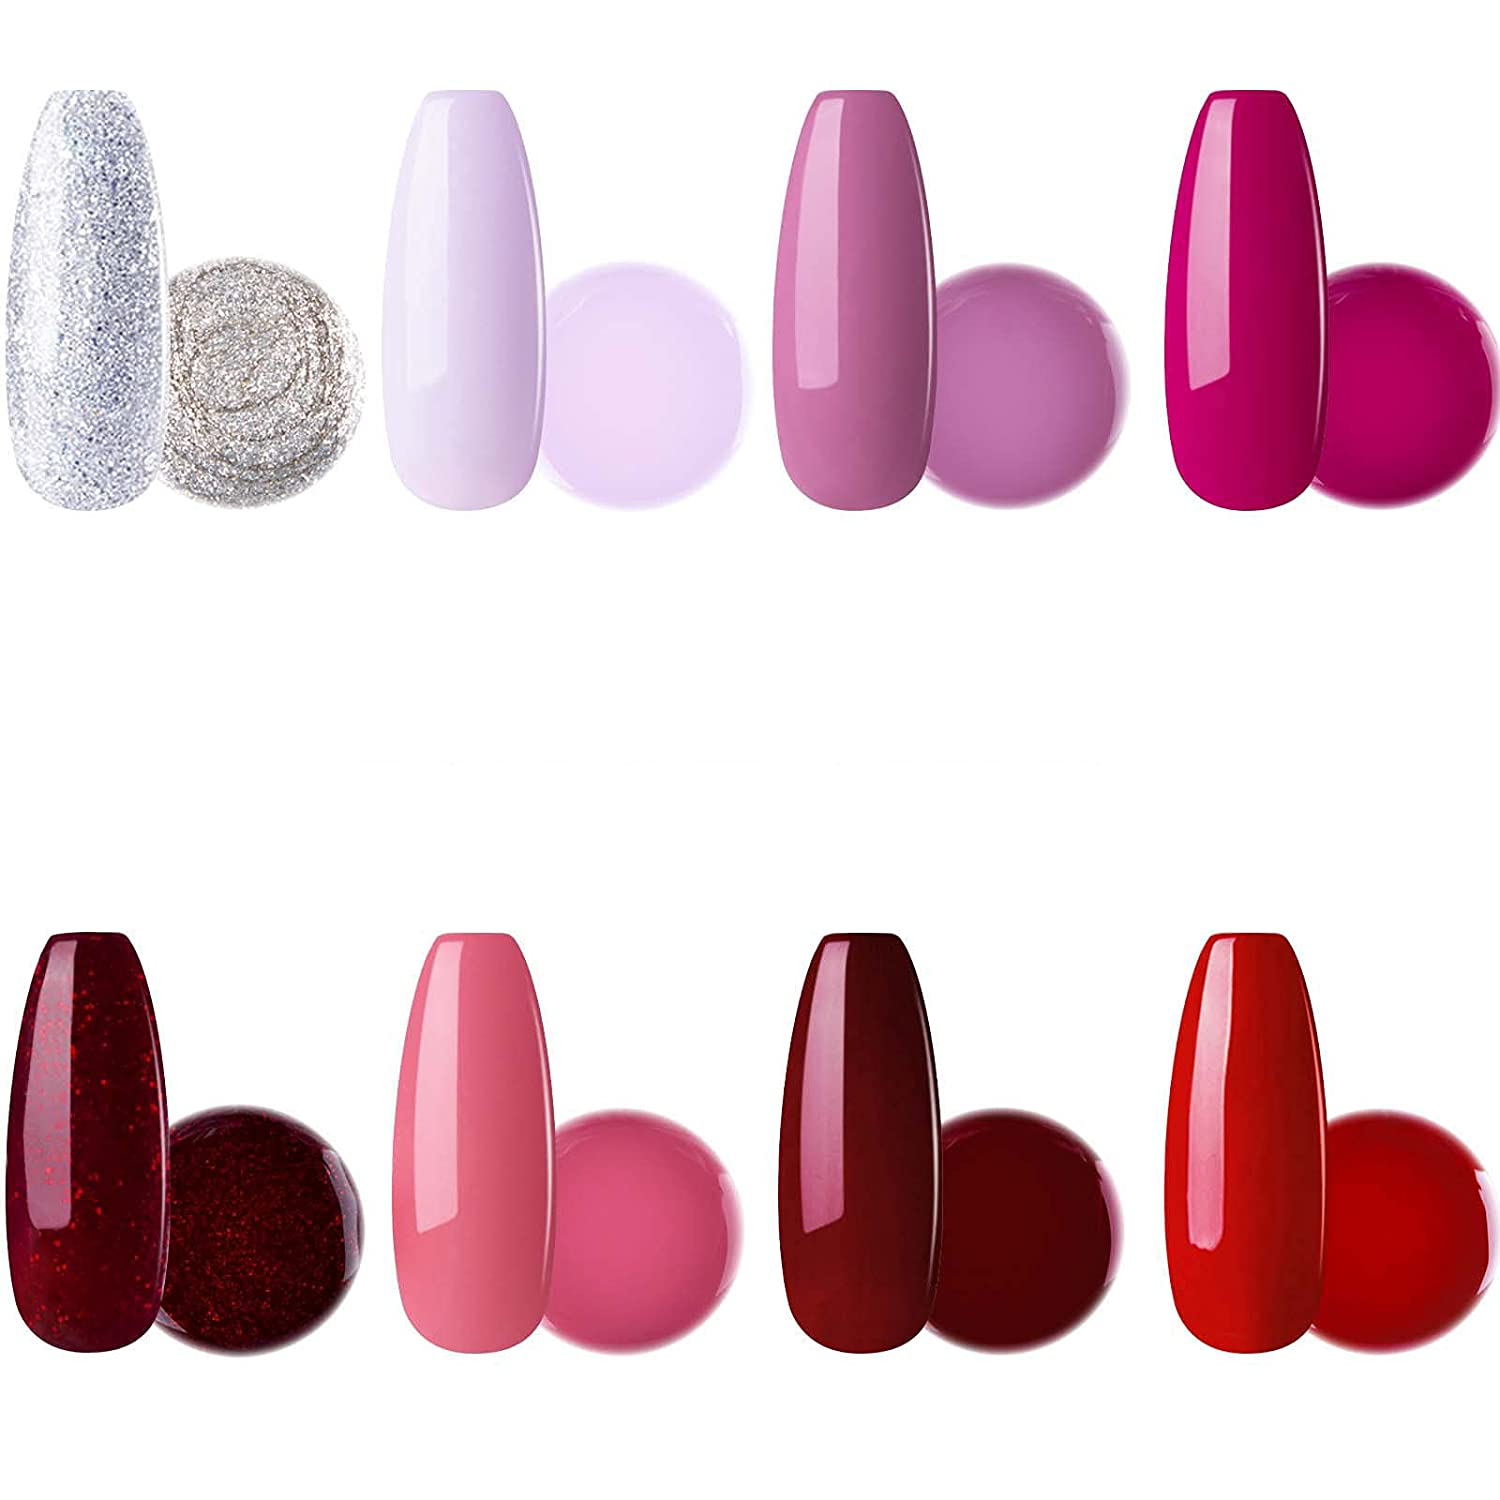 Red Pink Purple Gel Nail Polish Set - Candy Lover Soak off UV LED Gel Polish Set 8 Colors Home Gel Manicure Kit